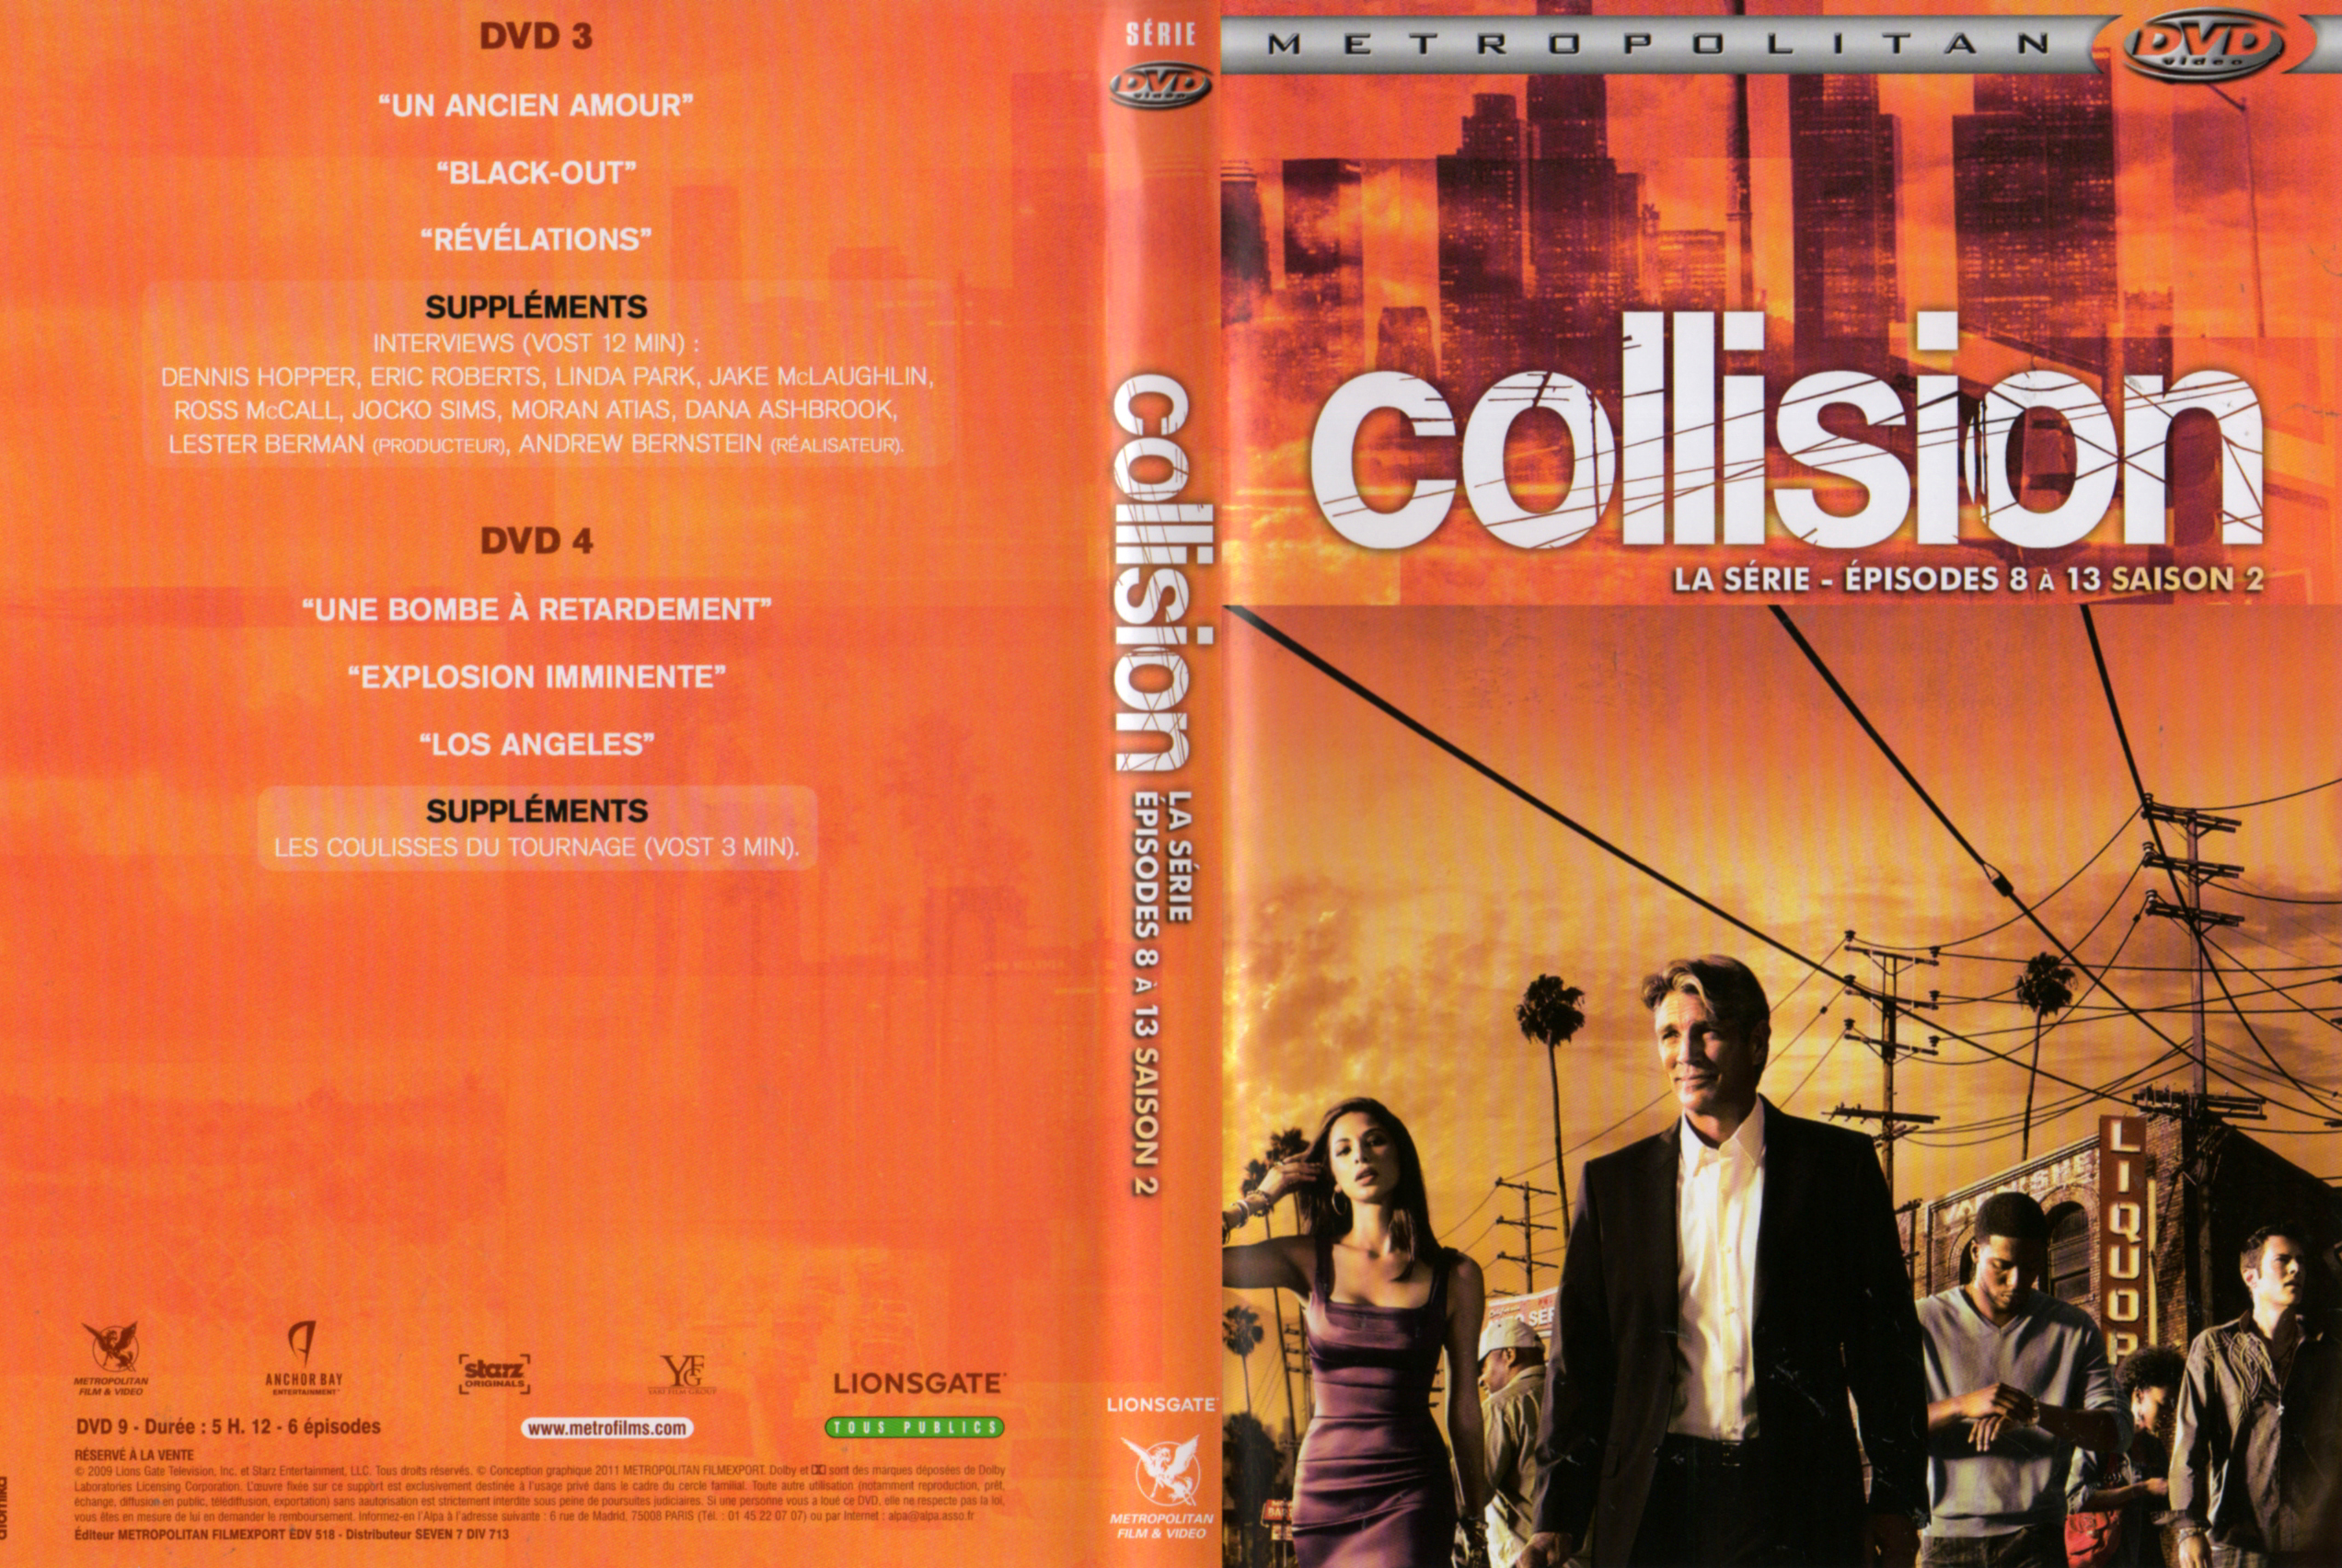 Jaquette DVD Collision La srie Saison 2 DVD 2